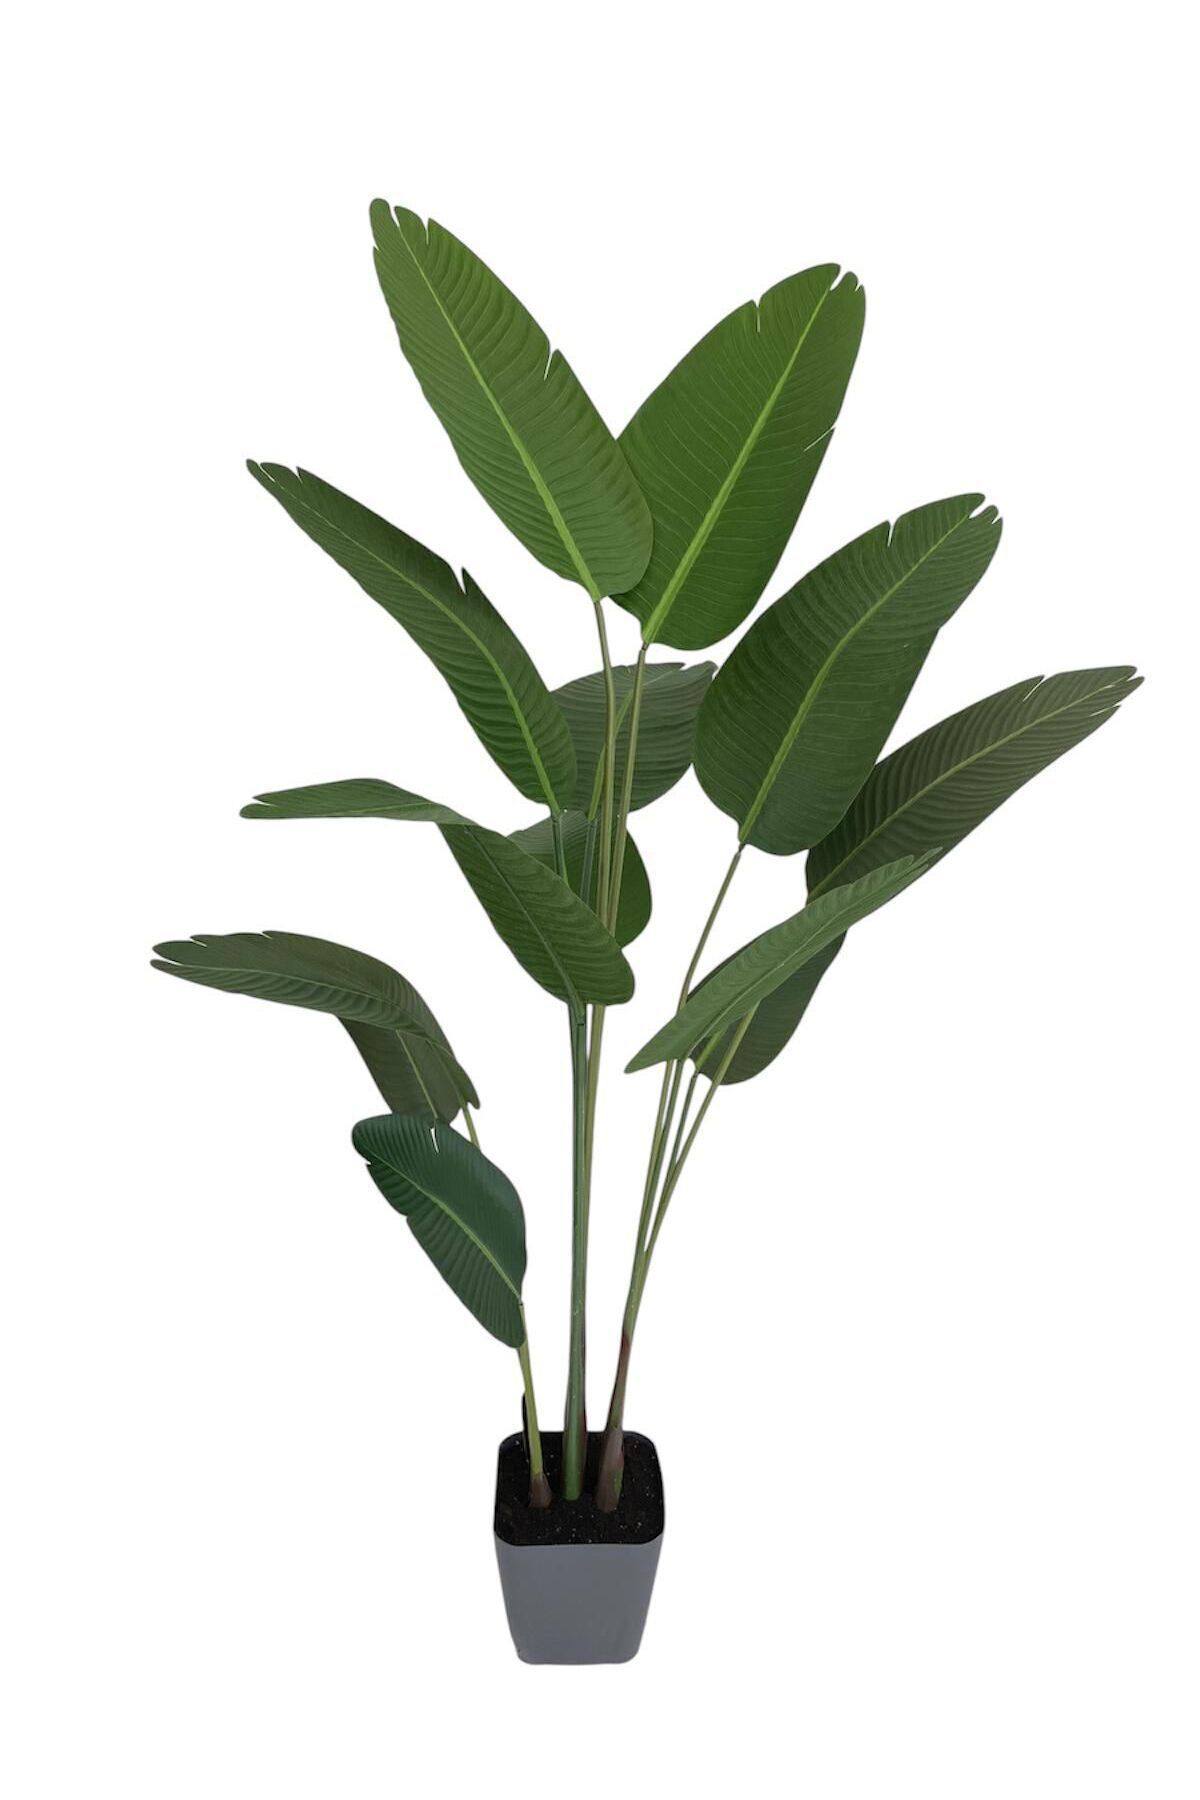 VEAL STORE Yapay Starliçe Ağacı 170 cm 10 Yaprak Büyük Yaprak 1. Kalite